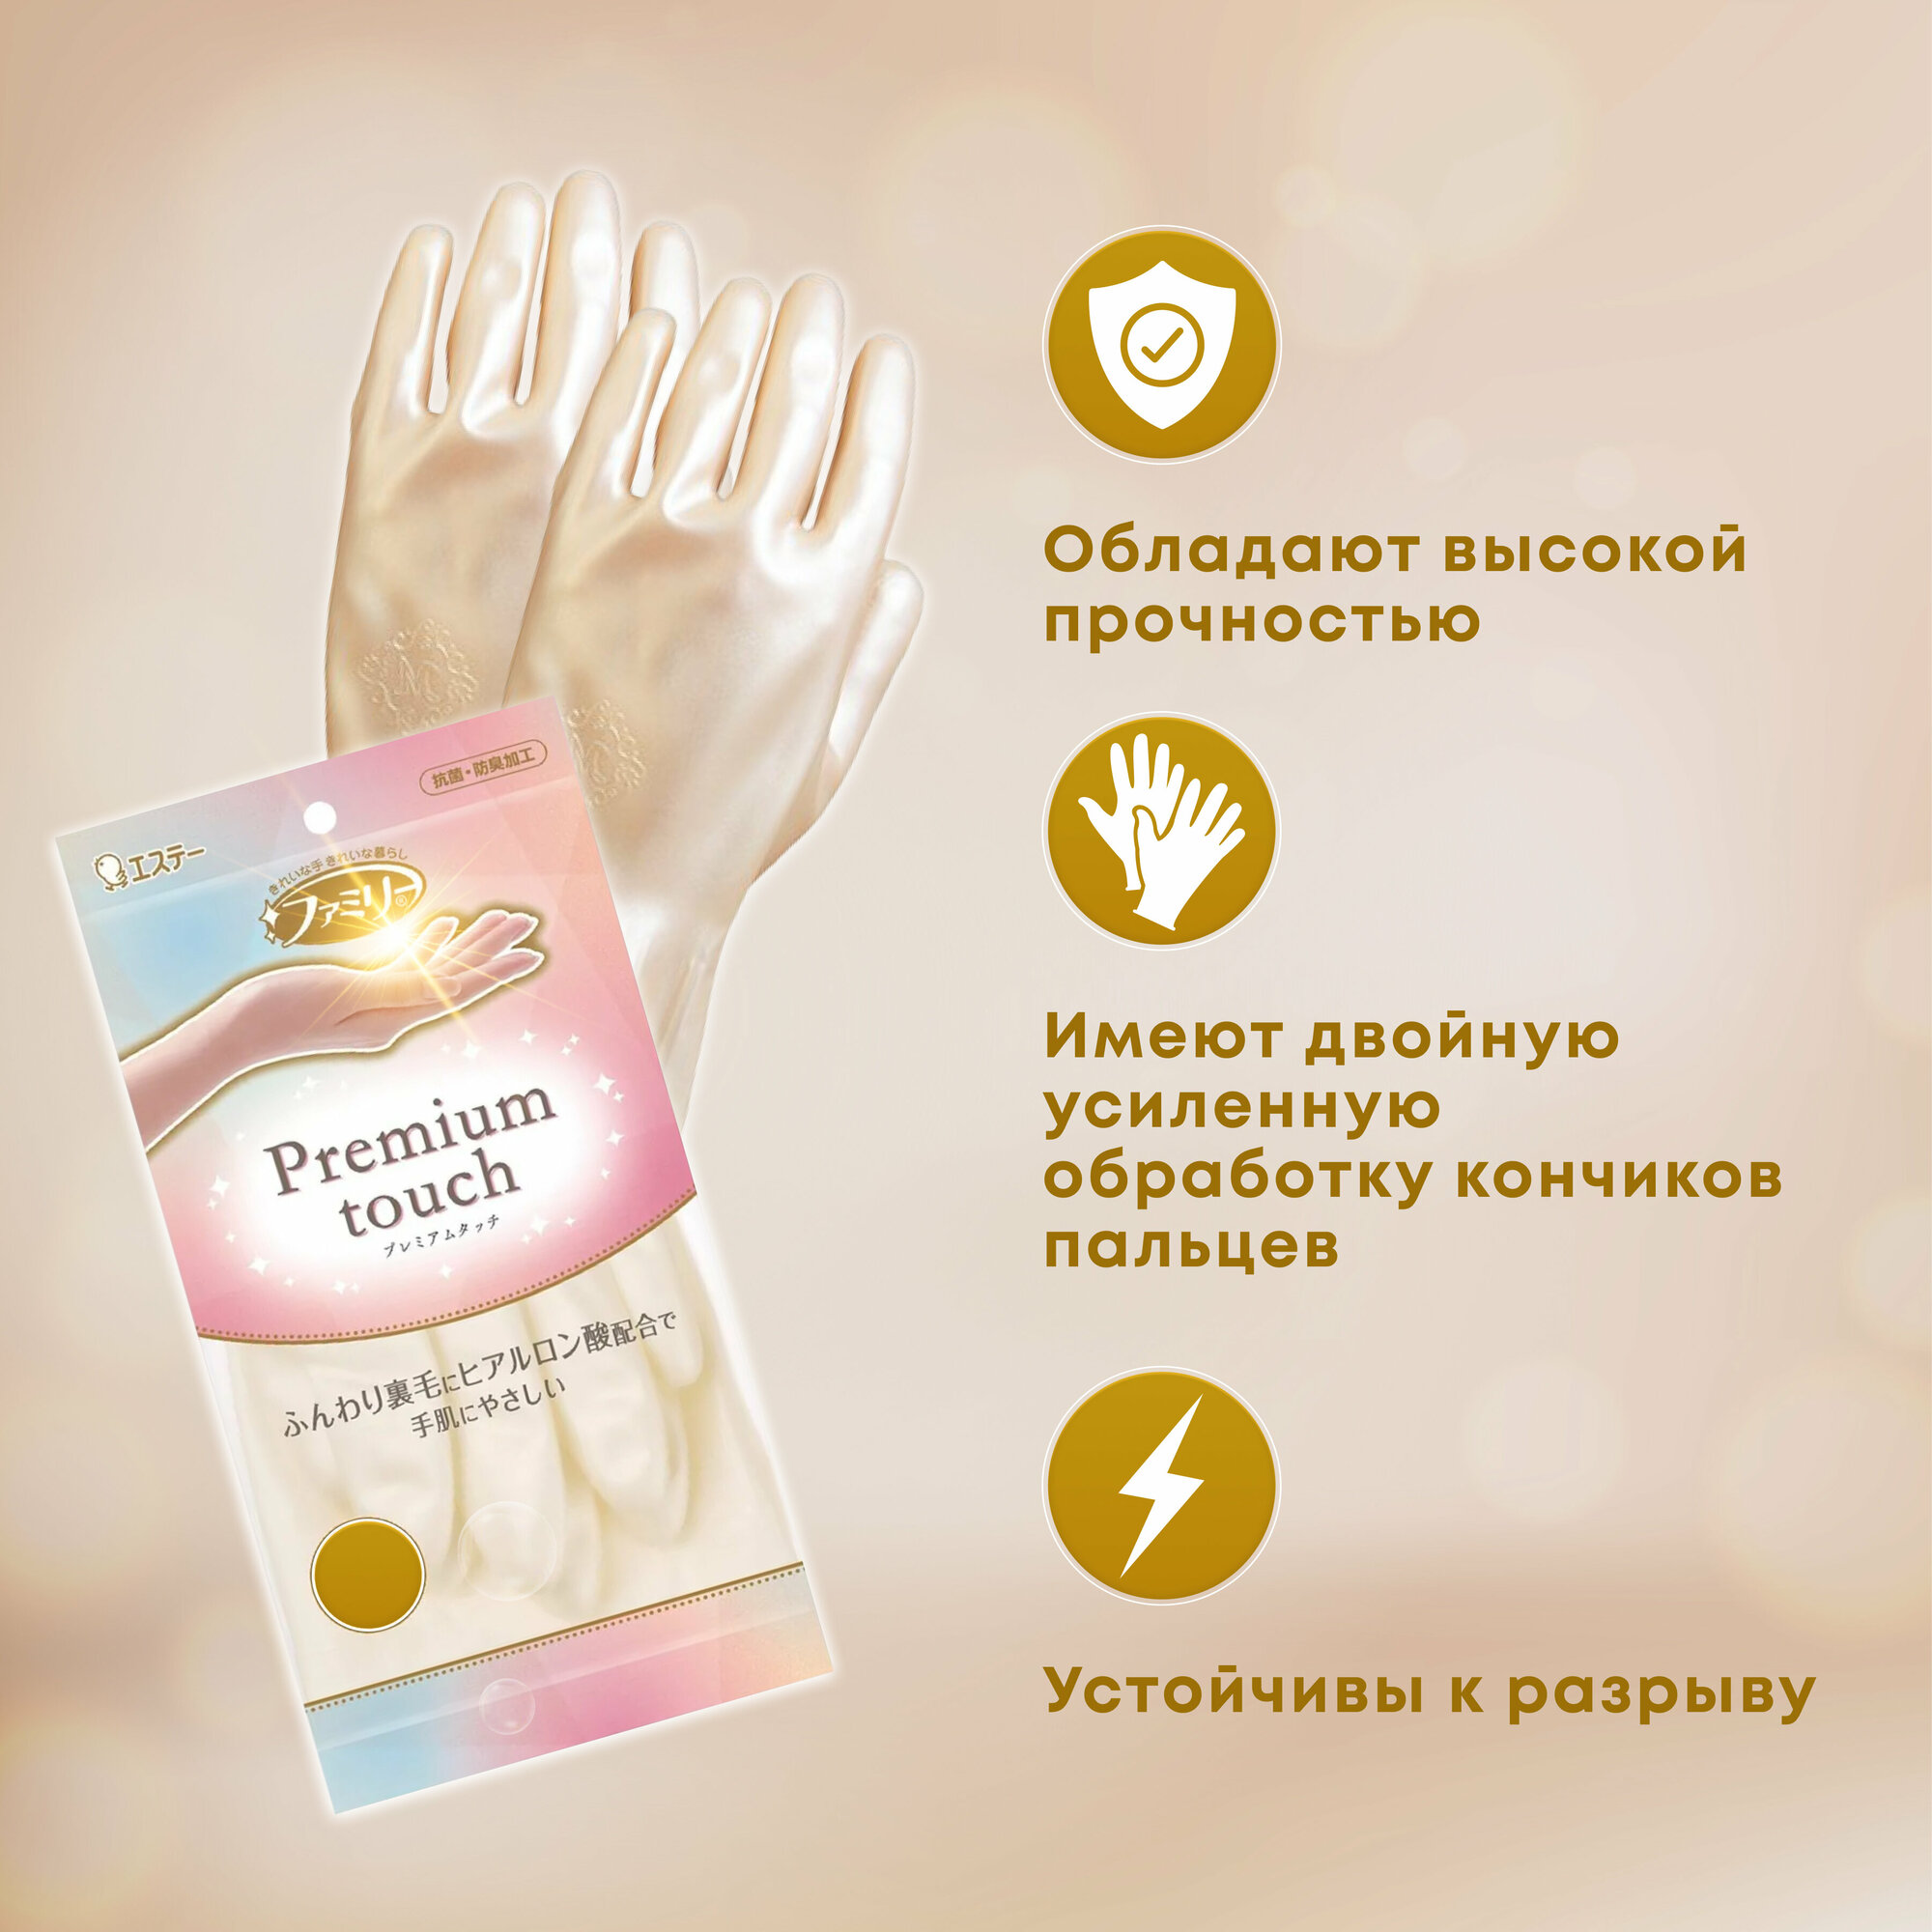 ST Перчатки для бытовых и хозяйственных нужд "Family" "Premium touch" (винил, пропитаны гиалуроновой кислотой, средней толщины) размер M